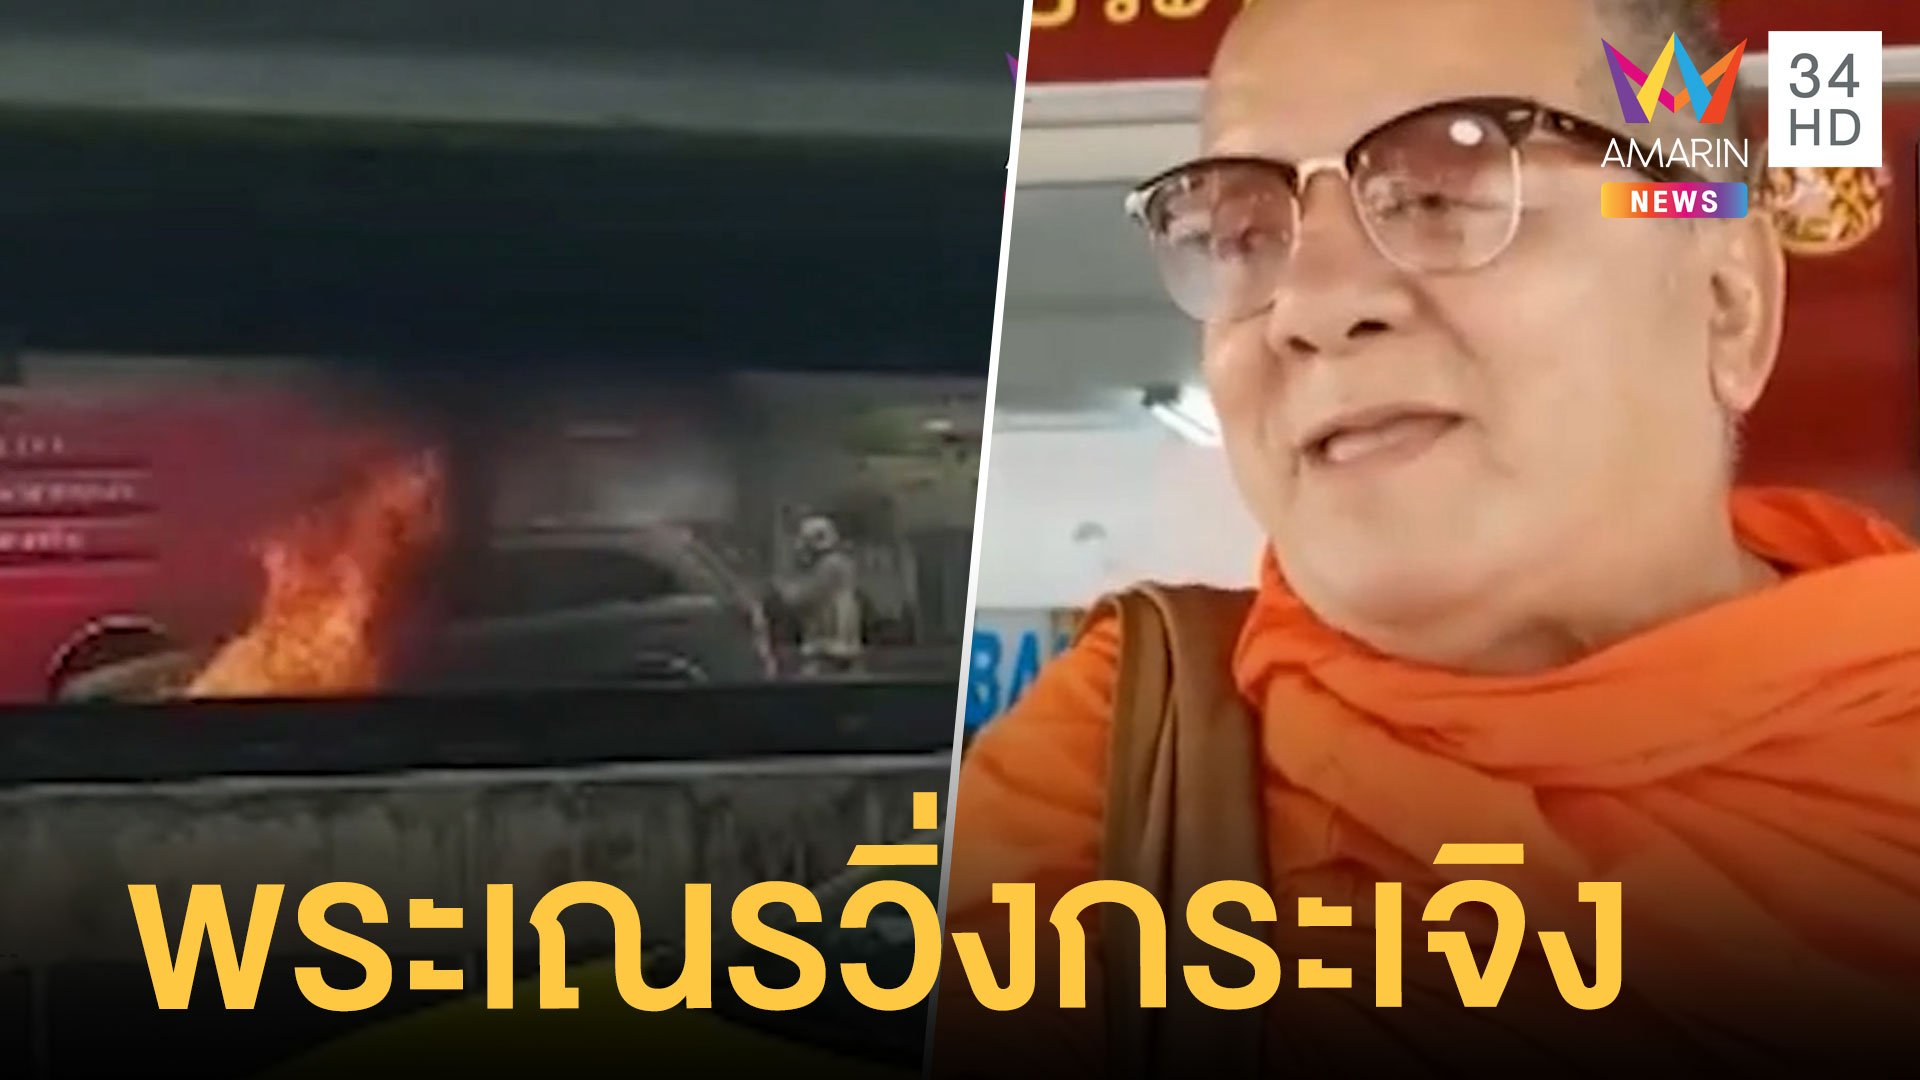 พระรอดของแท้! ไฟไหม้รถบนถนน พระ-เณร รอดหวุดหวิด | ข่าวอรุณอมรินทร์ | 6 ก.พ. 65 | AMARIN TVHD34